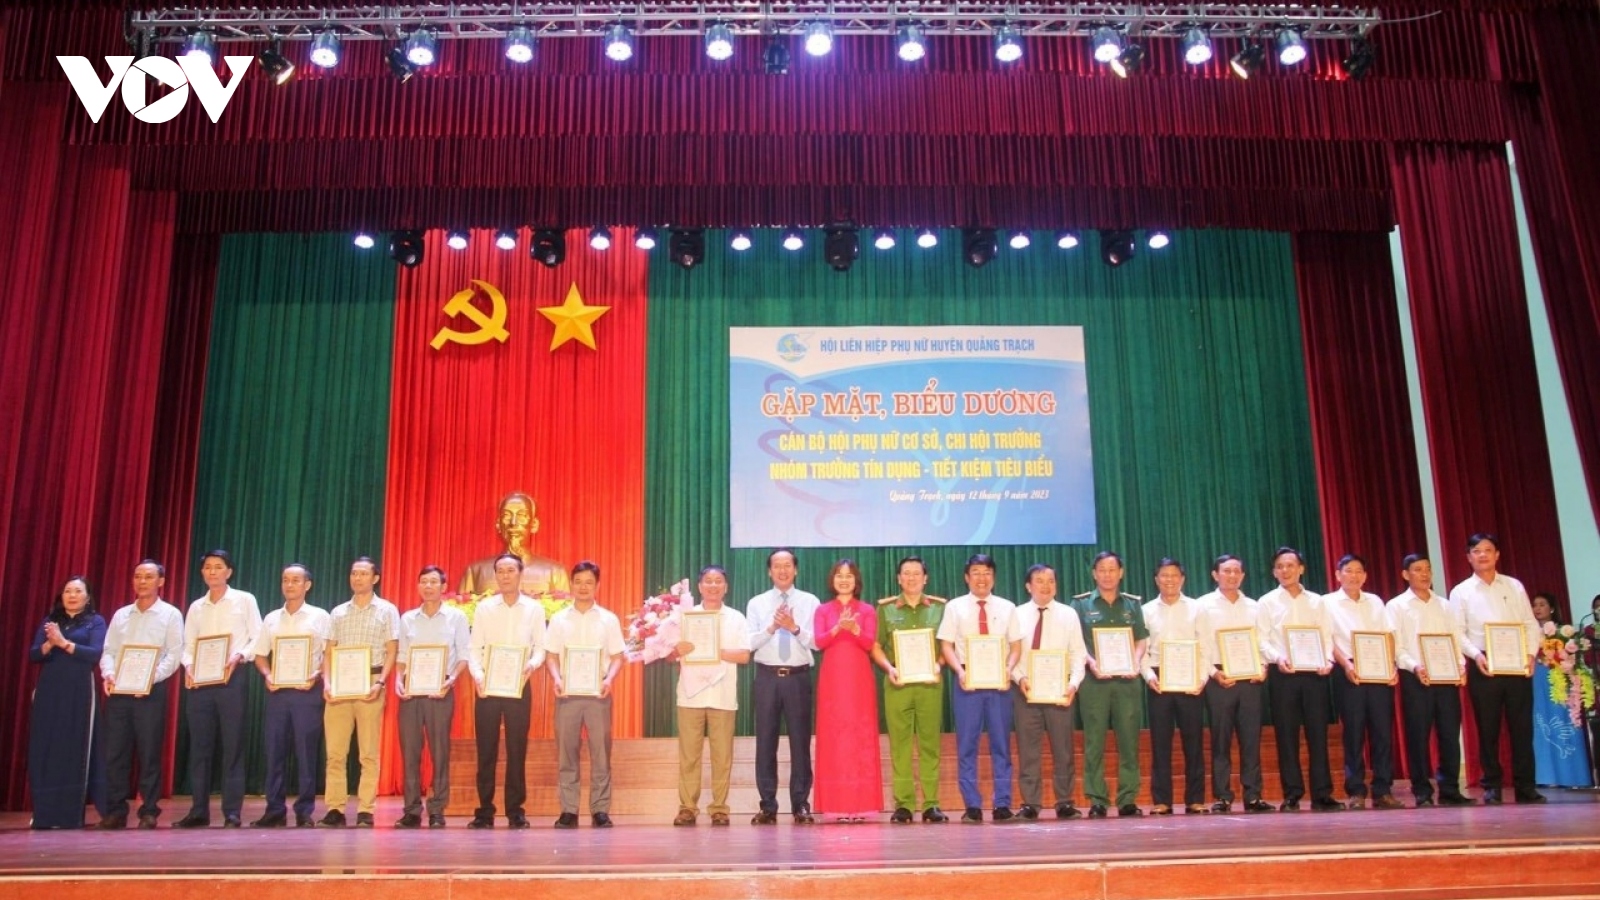 95 nam giới ở Quảng Bình được kết nạp Hội viên danh dự Hội LHPN tỉnh